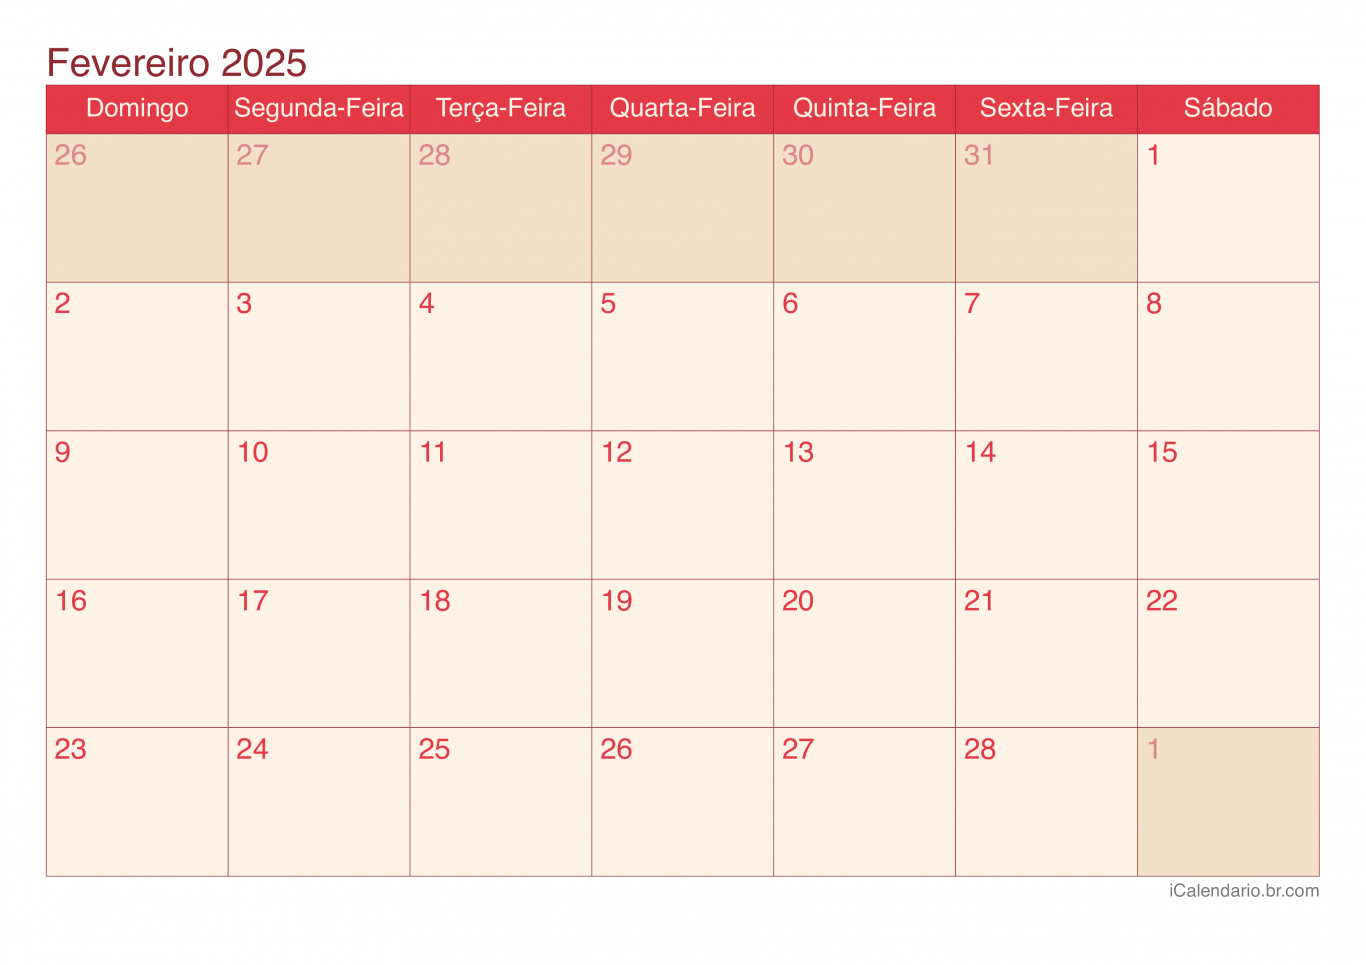 Calendário de fevereiro 2025 - Cherry